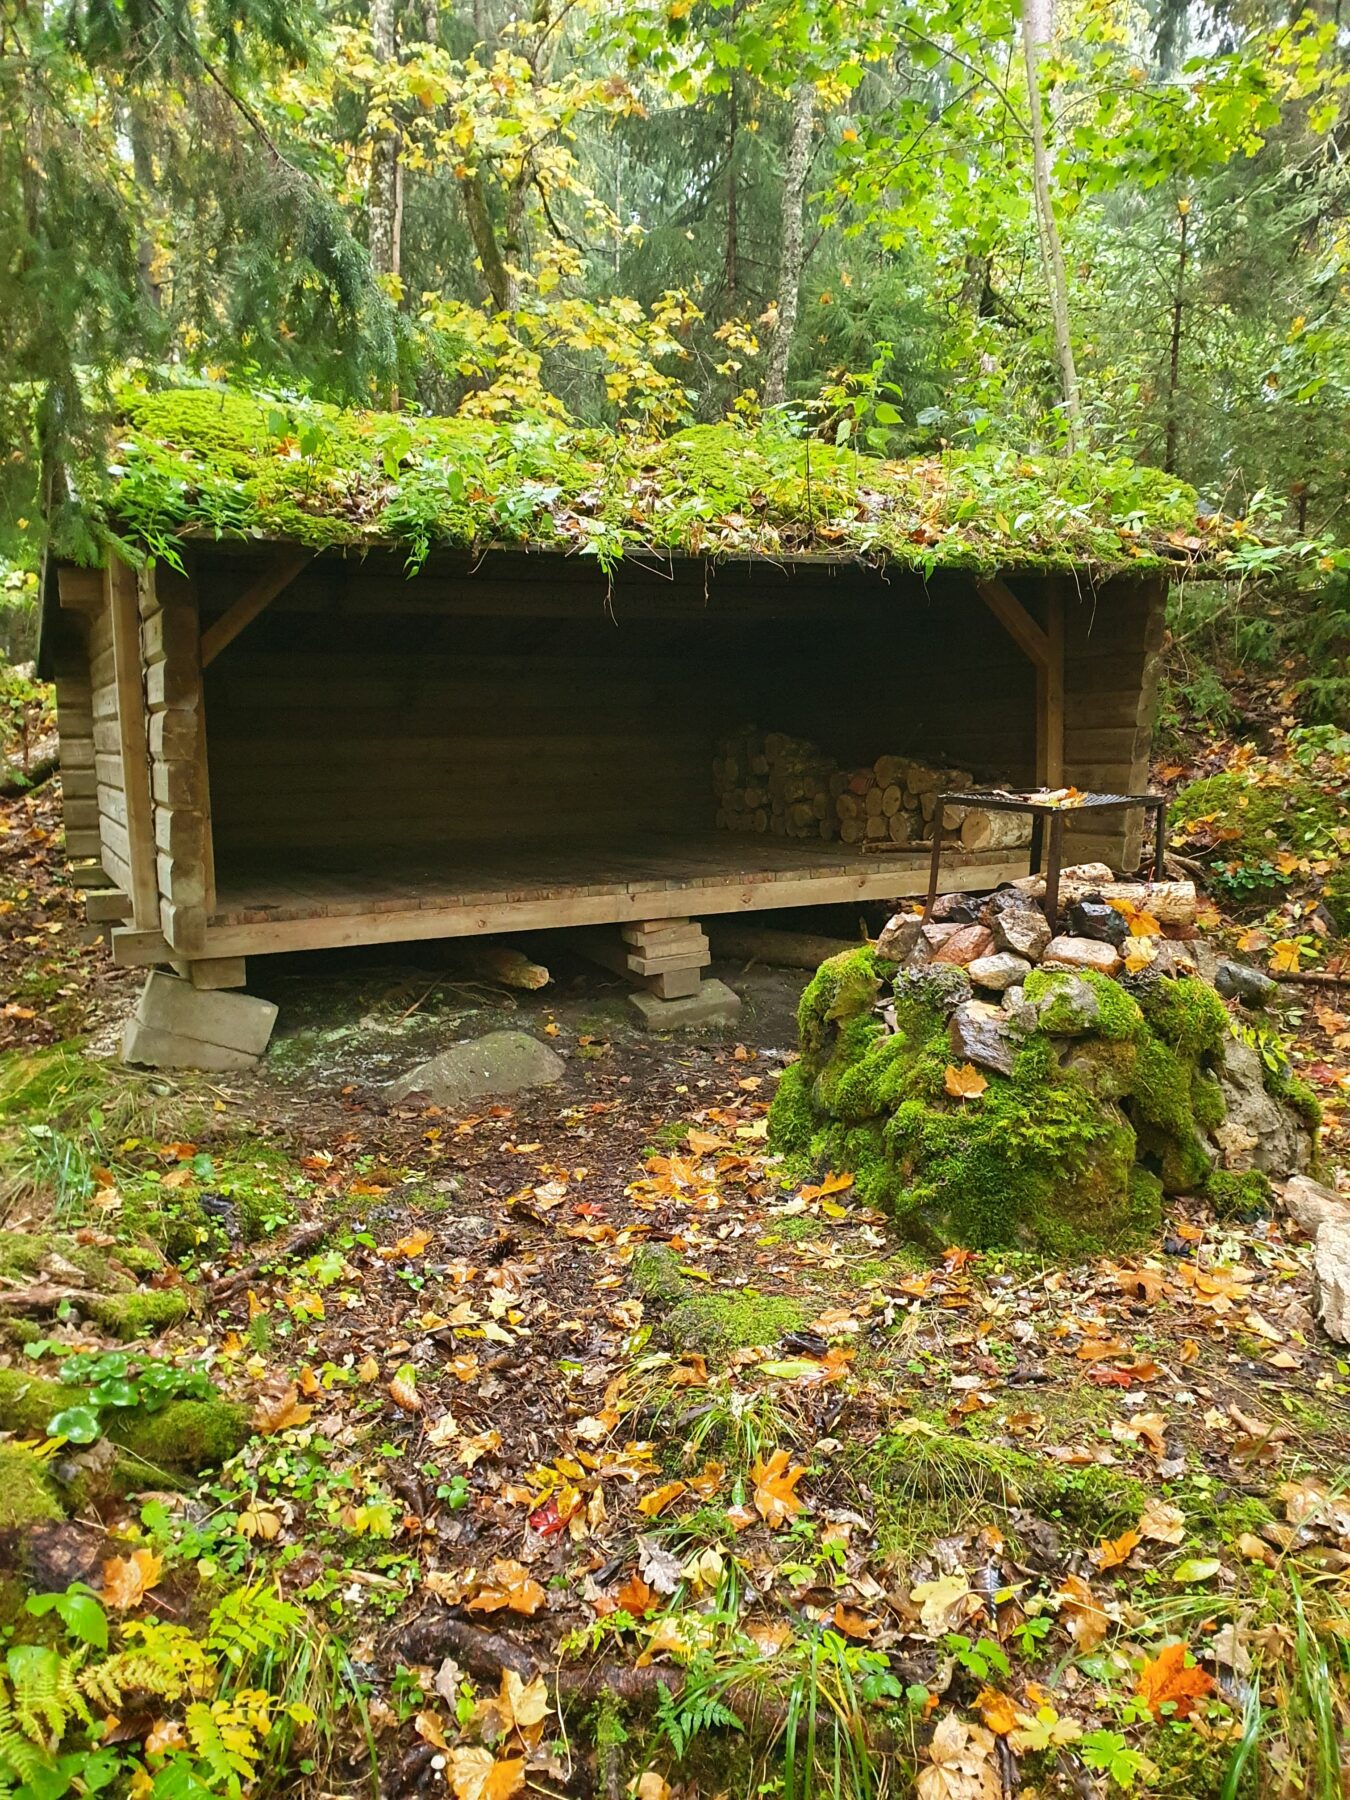 Bruksleden trail shelter